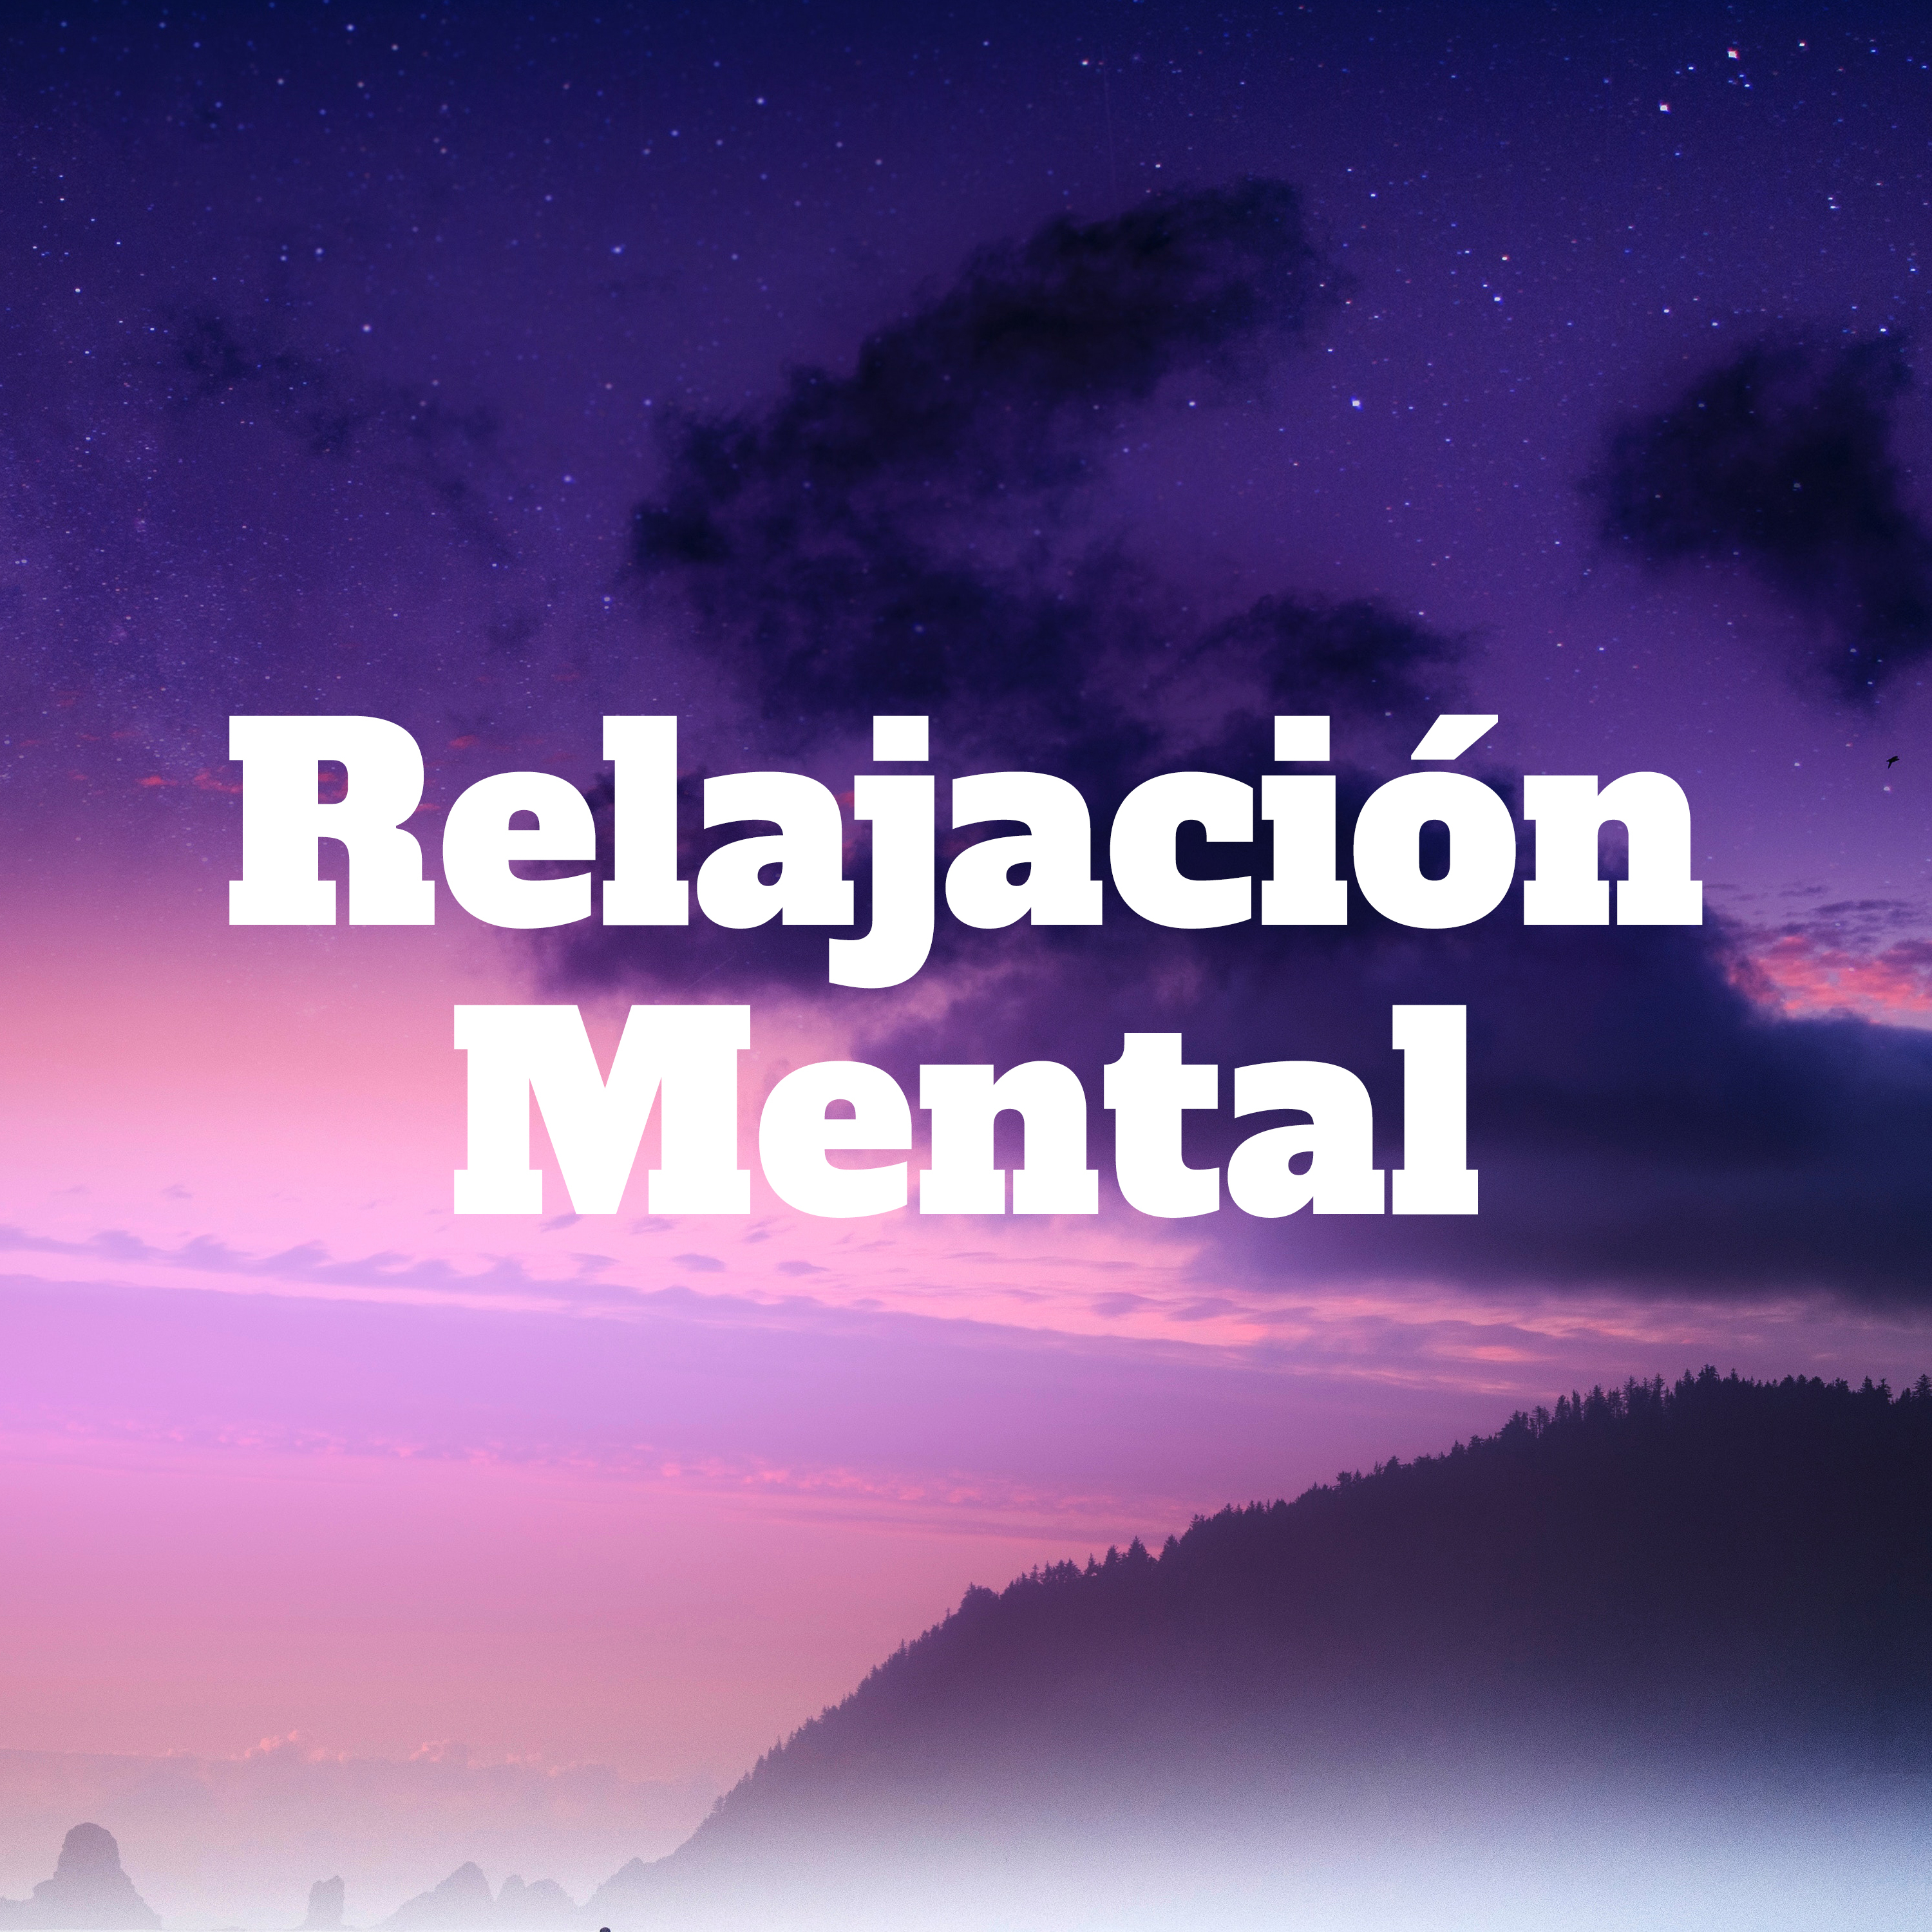 Relajacion Mental: Centro de Bienestar, Salud, Felicidad, Tranquilidad y Paz Interior